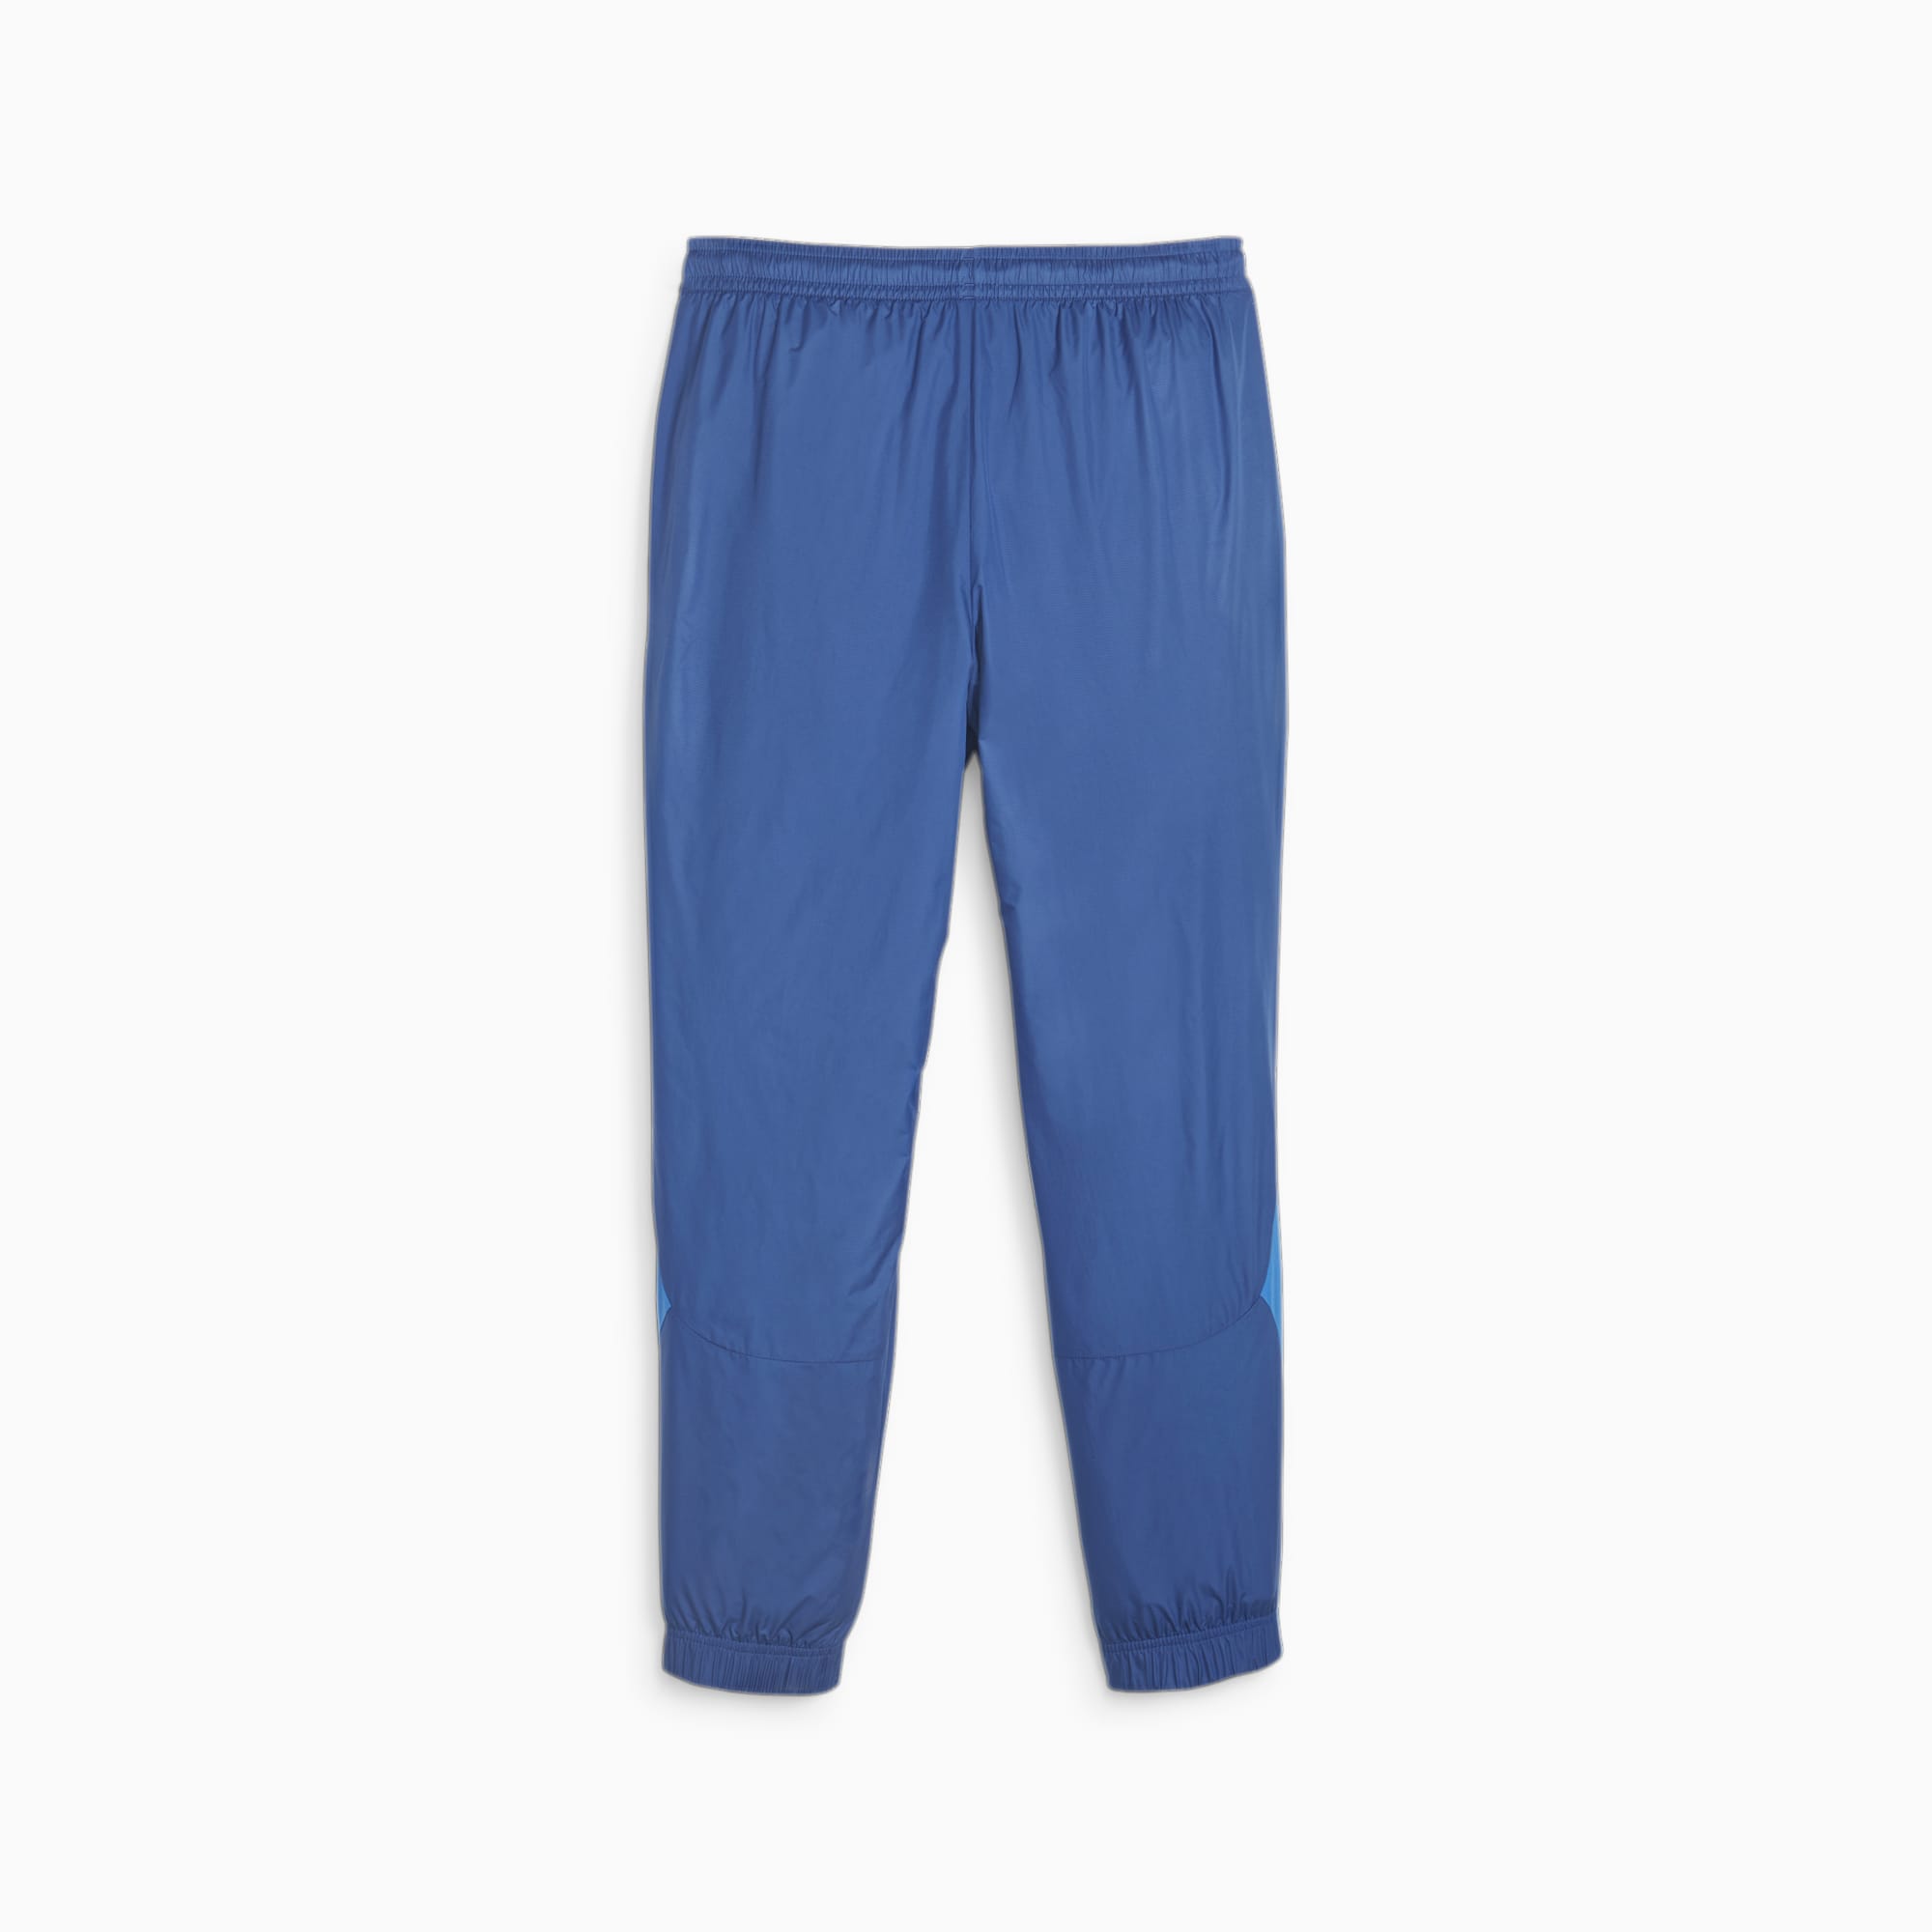 Men's PUMA Olympique De Marseille Prematch Football Pants, Royal Blue, Size XS, Clothing